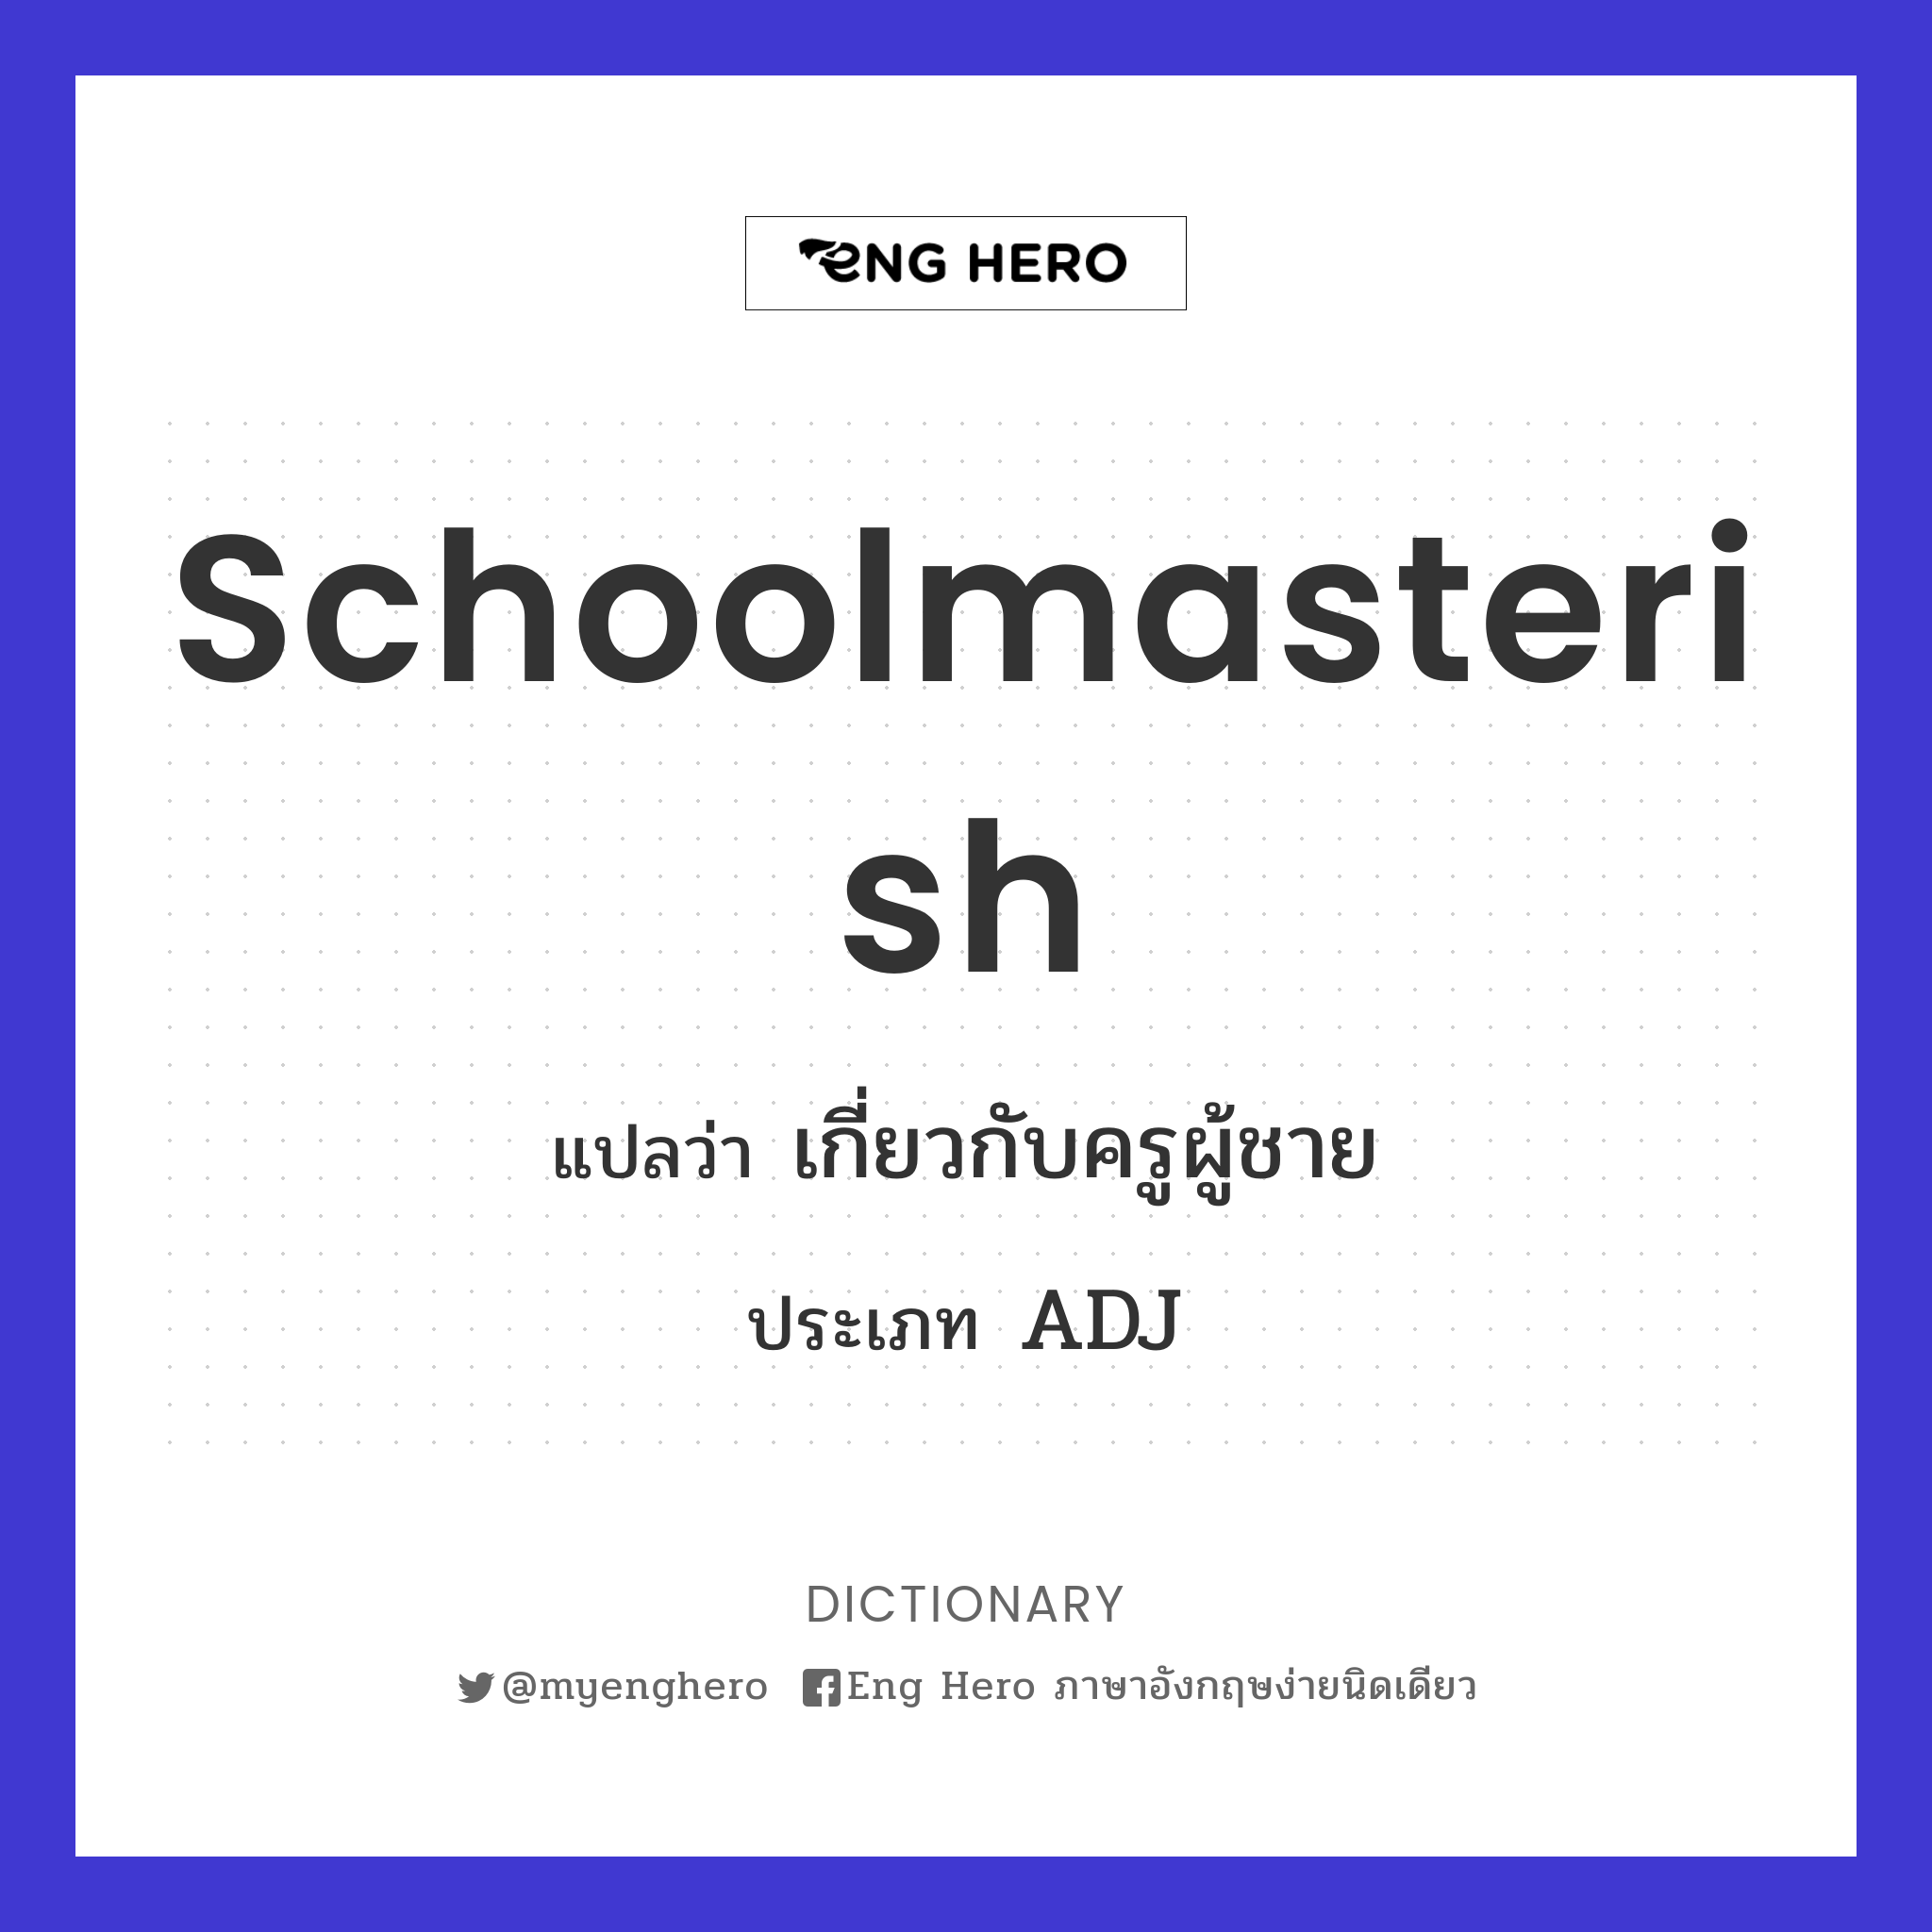 schoolmasterish